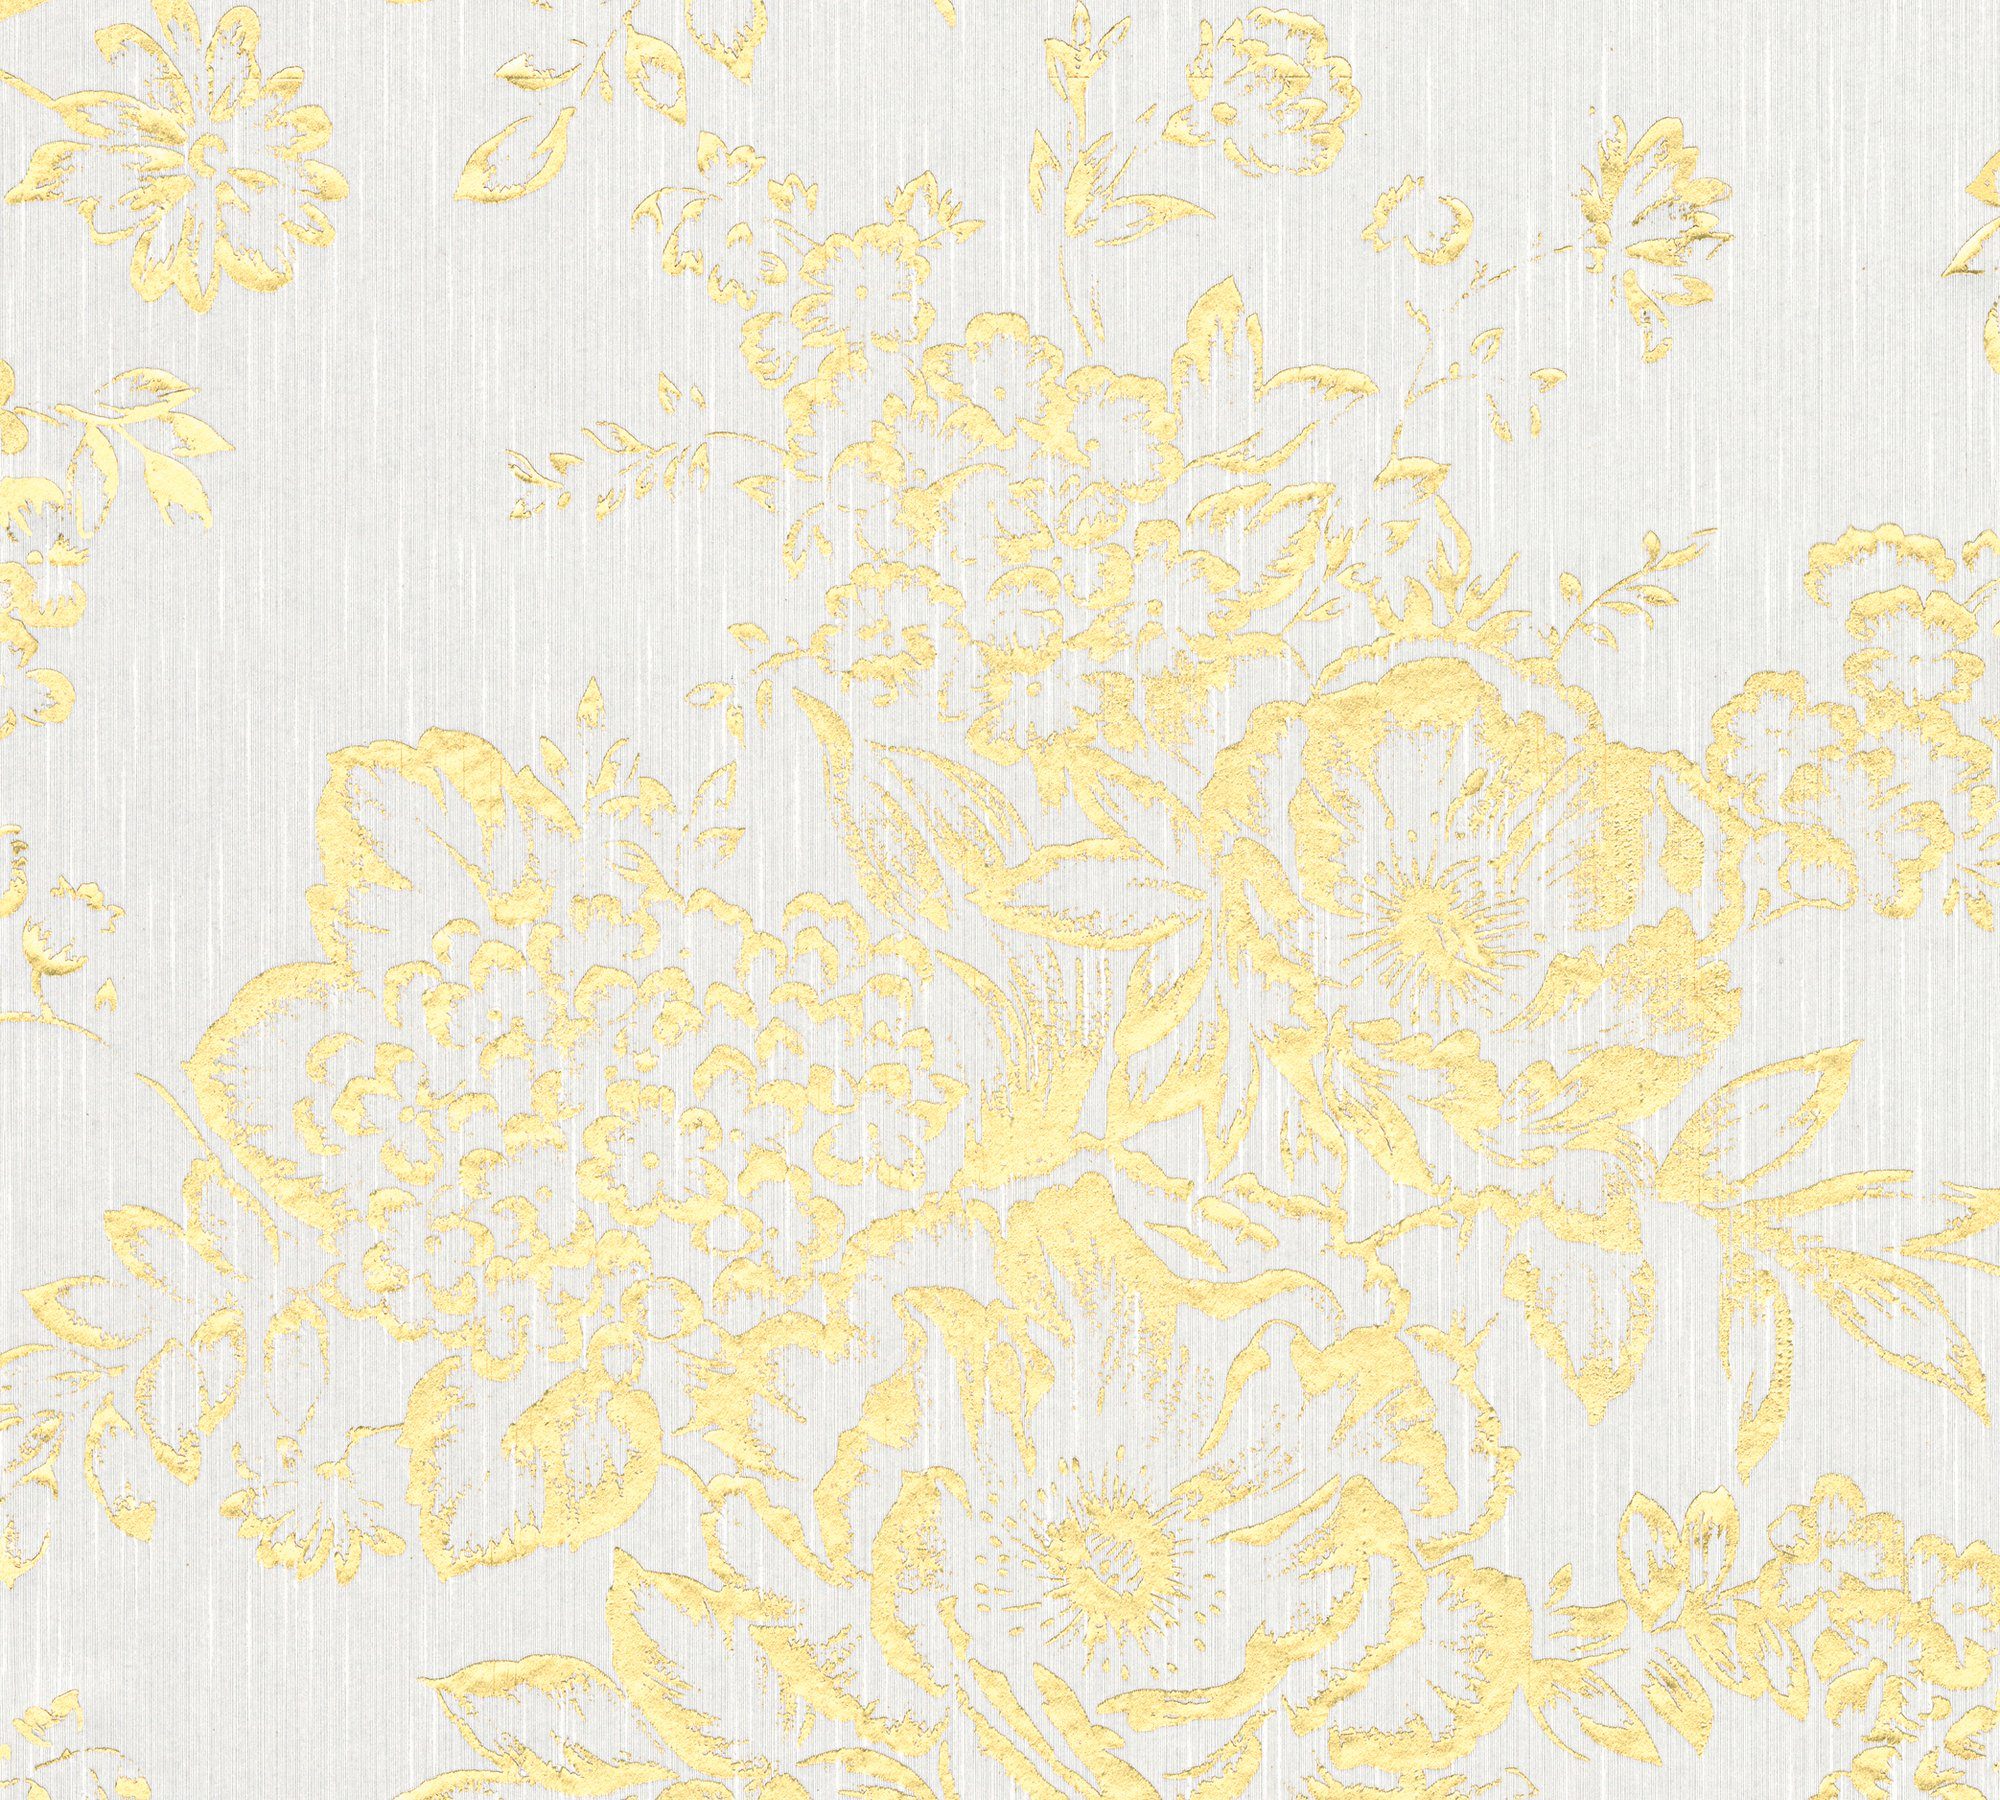 Architects Paper Textiltapete Metallic Silk, samtig, floral, glänzend, matt, Barocktapete Tapete Blumen